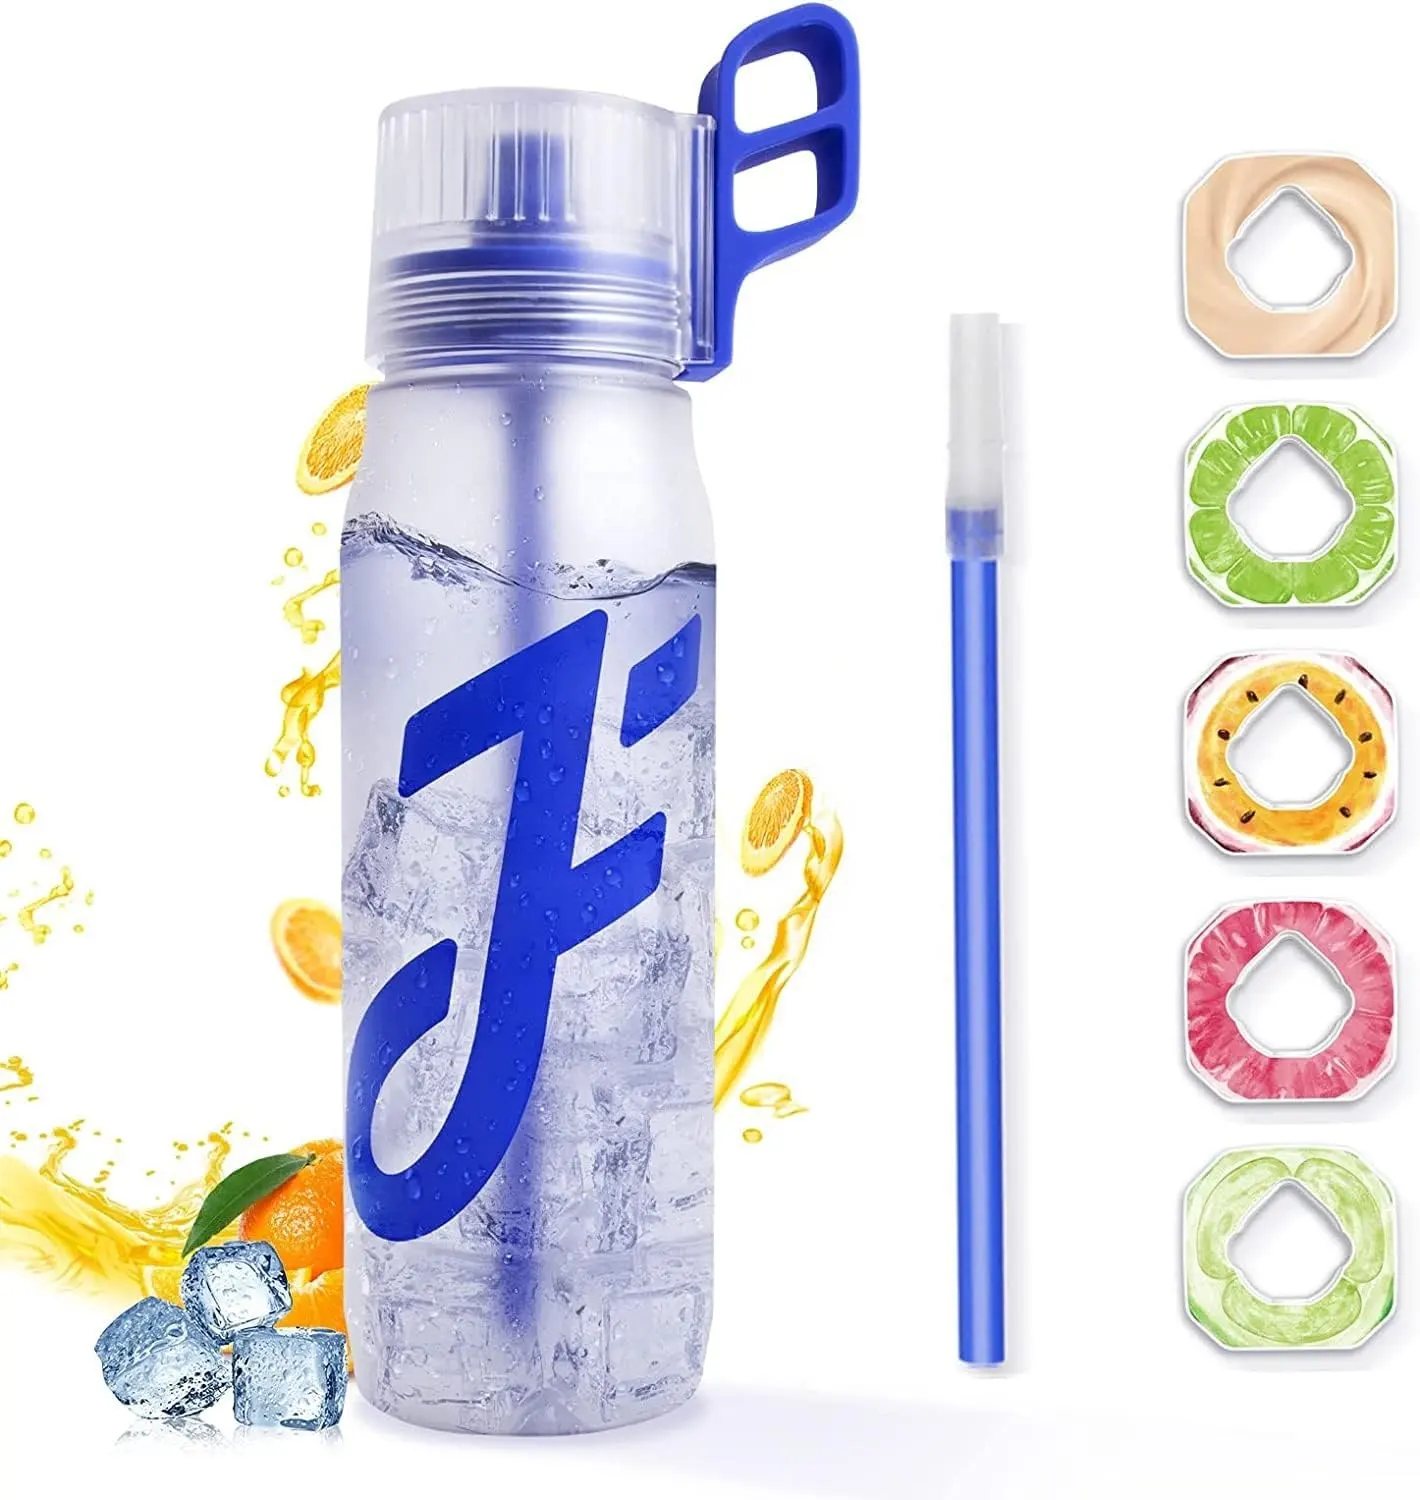 Logo personalizzato joyfit aromatizzante air drink met slaken scent fruit flavor up bottiglia d'acqua in plastica tritan con pod al gusto di impeccabile